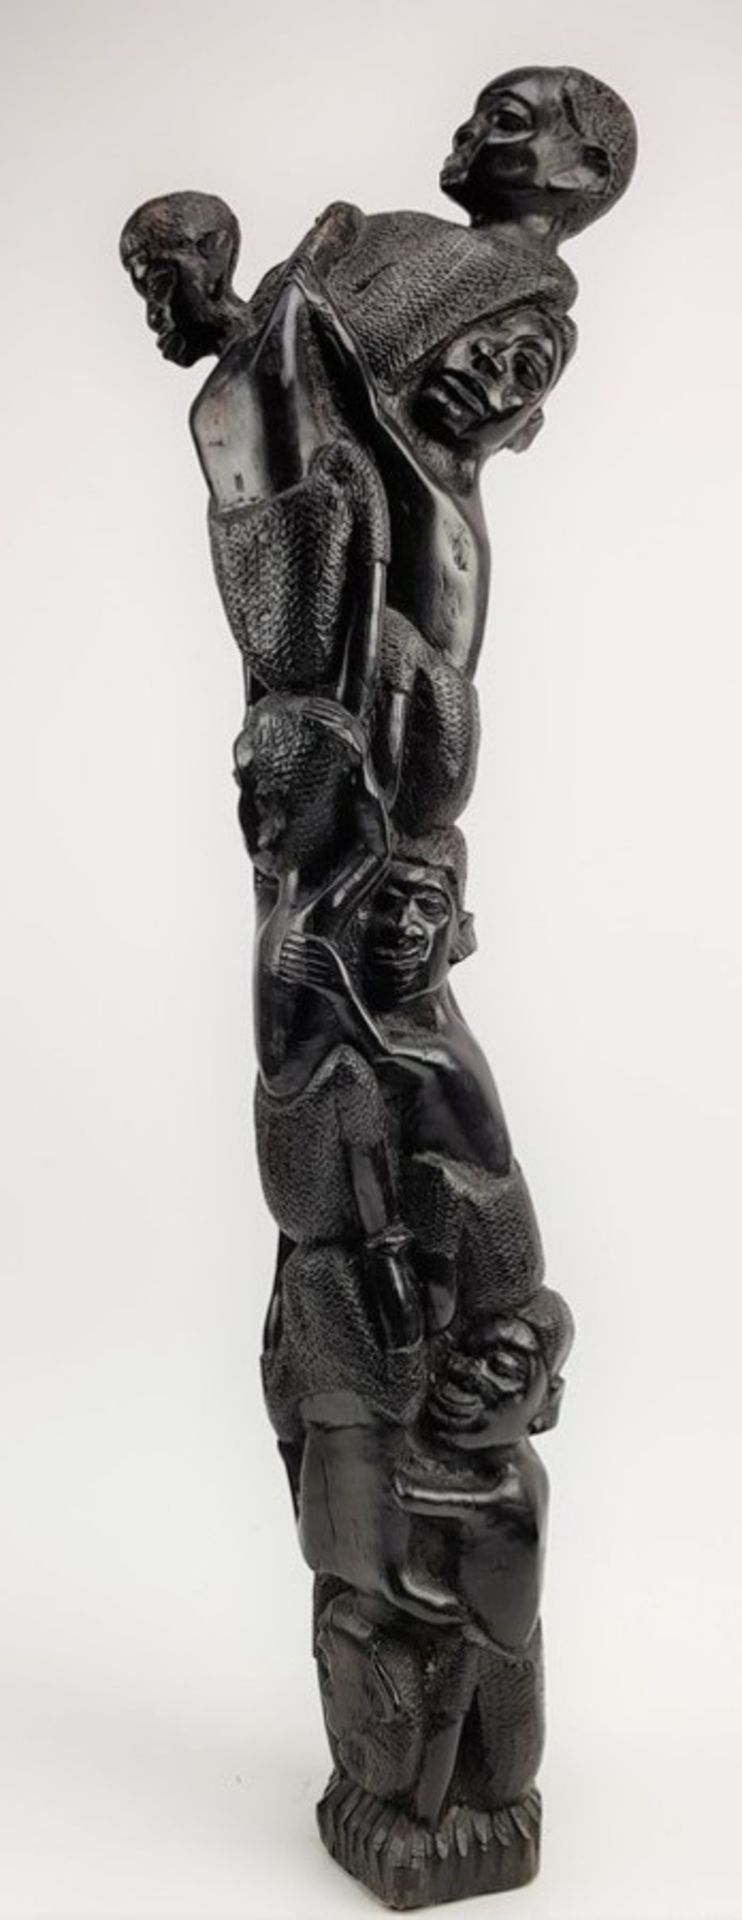 (Etnografica) Ebbenhout. Groot Makonde beeld, tweede helft 20 eeuw. Tanzania Afrika.Ebbenhout. Groot